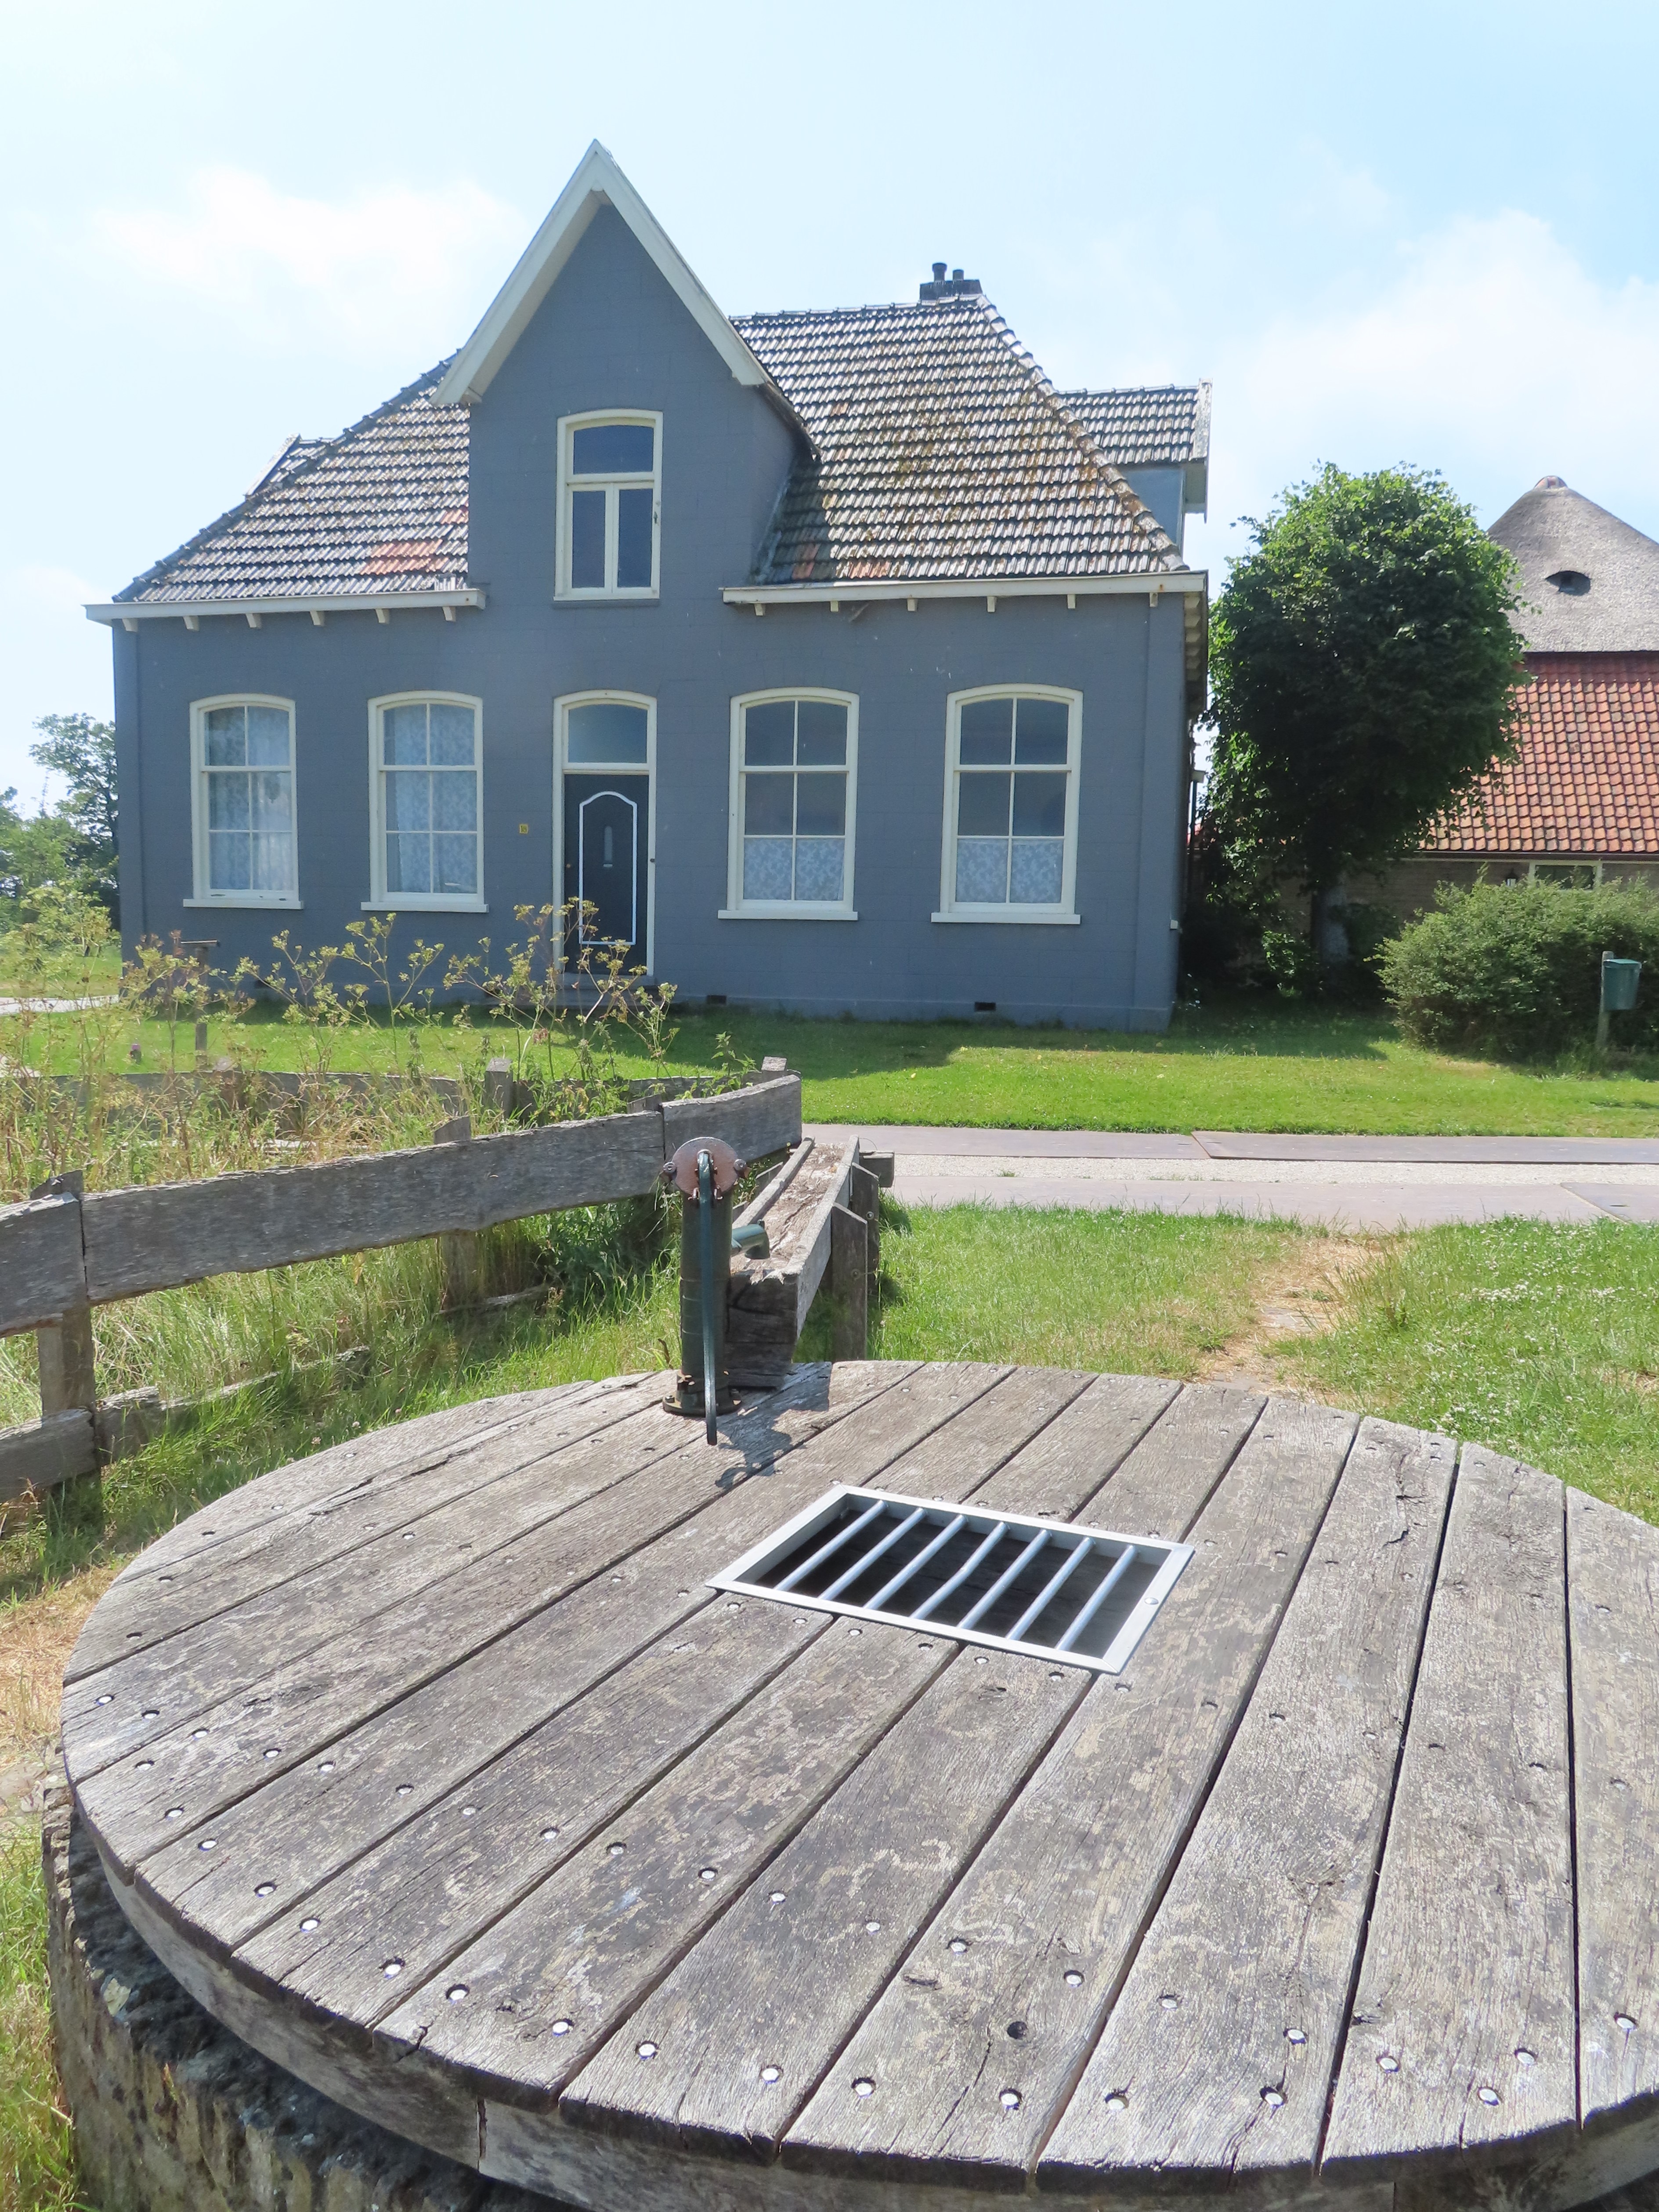 Buitenplaats Brakestein nabij Oudeschild op Texel.